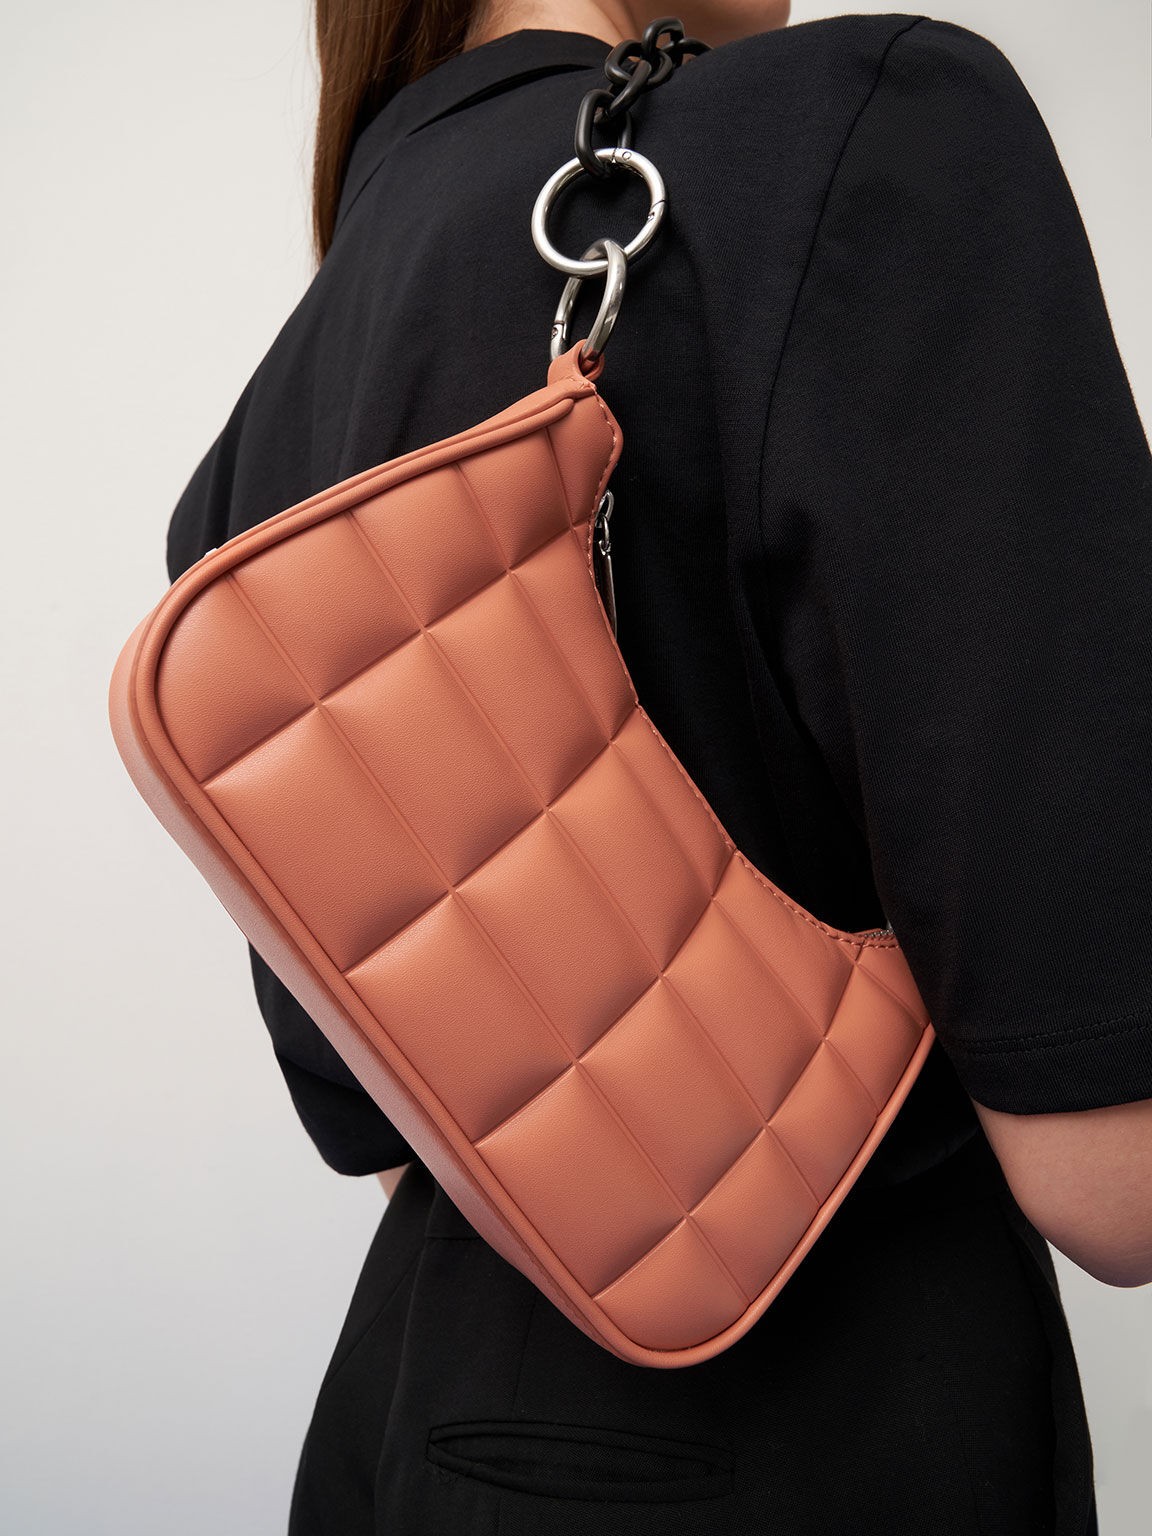 Maze Quilted Chain Shoulder Bag, Orange, hi-res